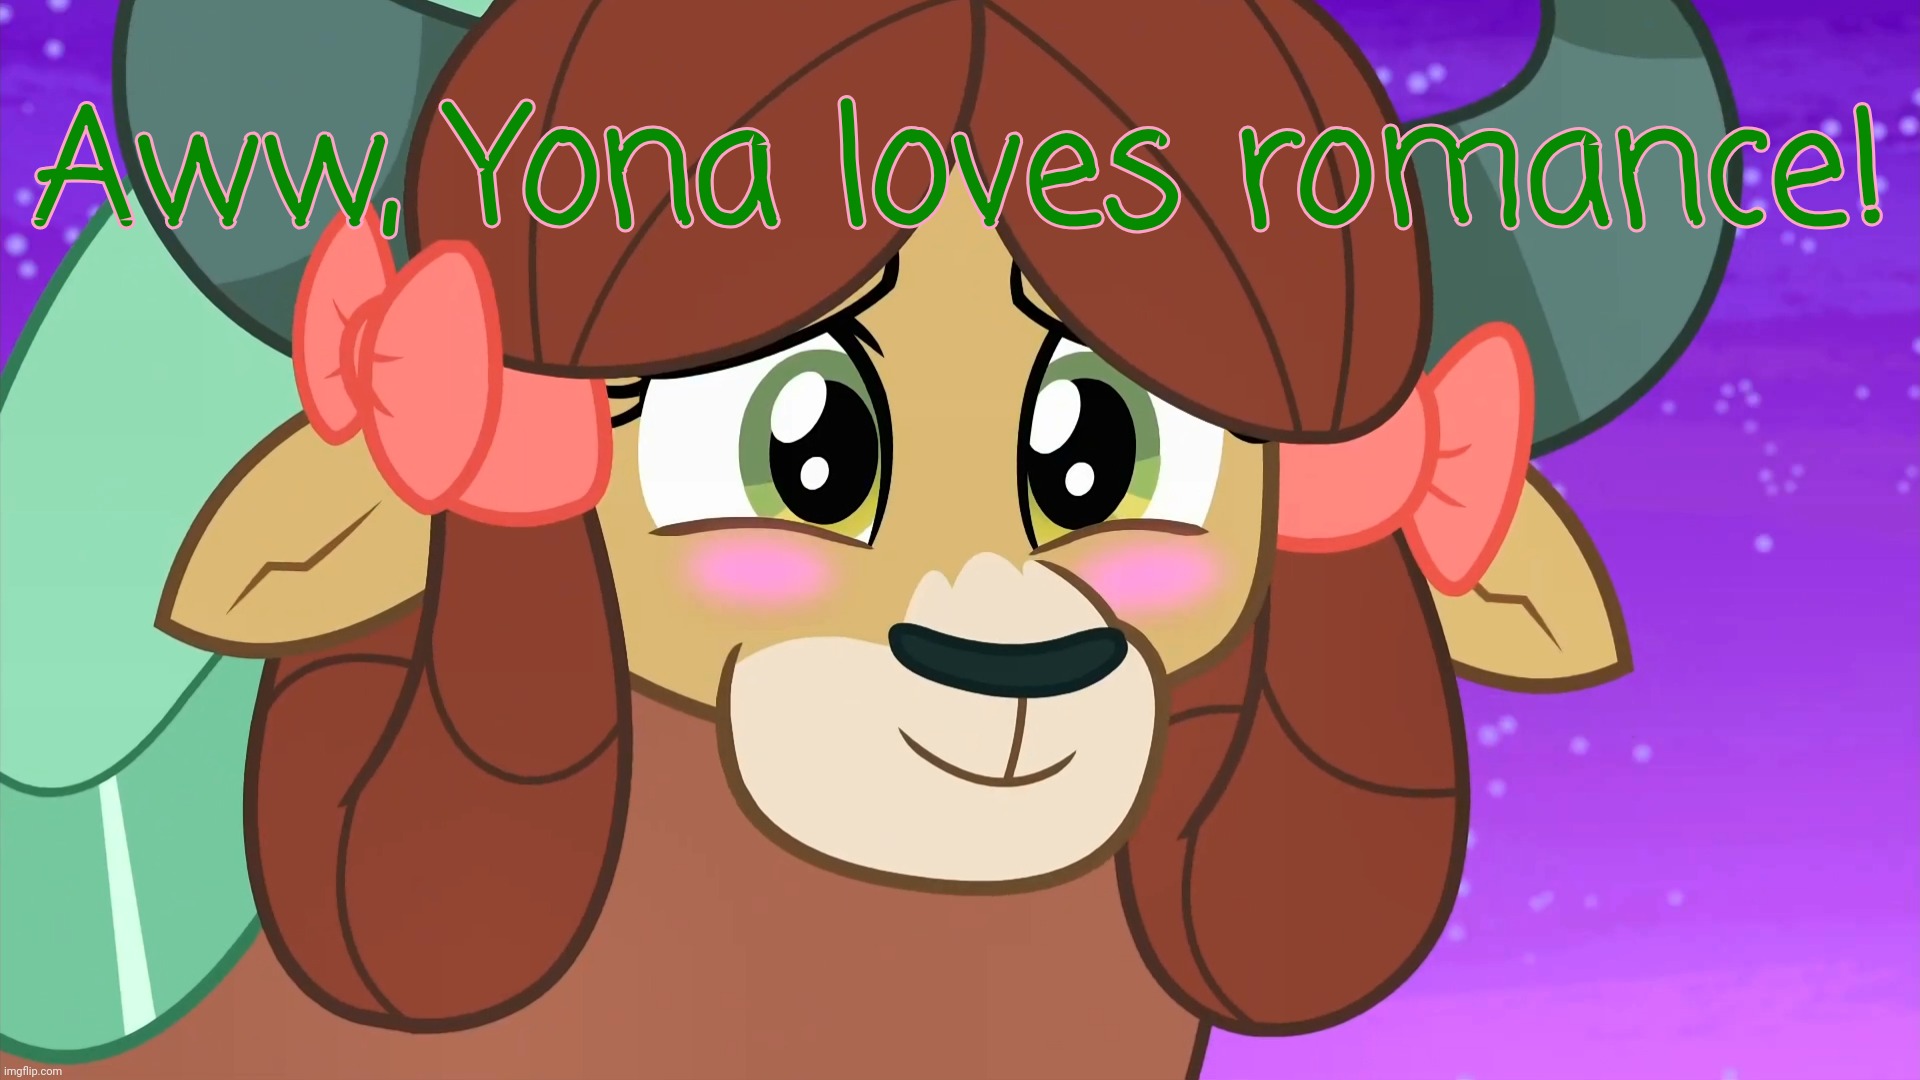 Blushed Yona (MLP) | Aww, Yona loves romance! | image tagged in blushed yona mlp | made w/ Imgflip meme maker